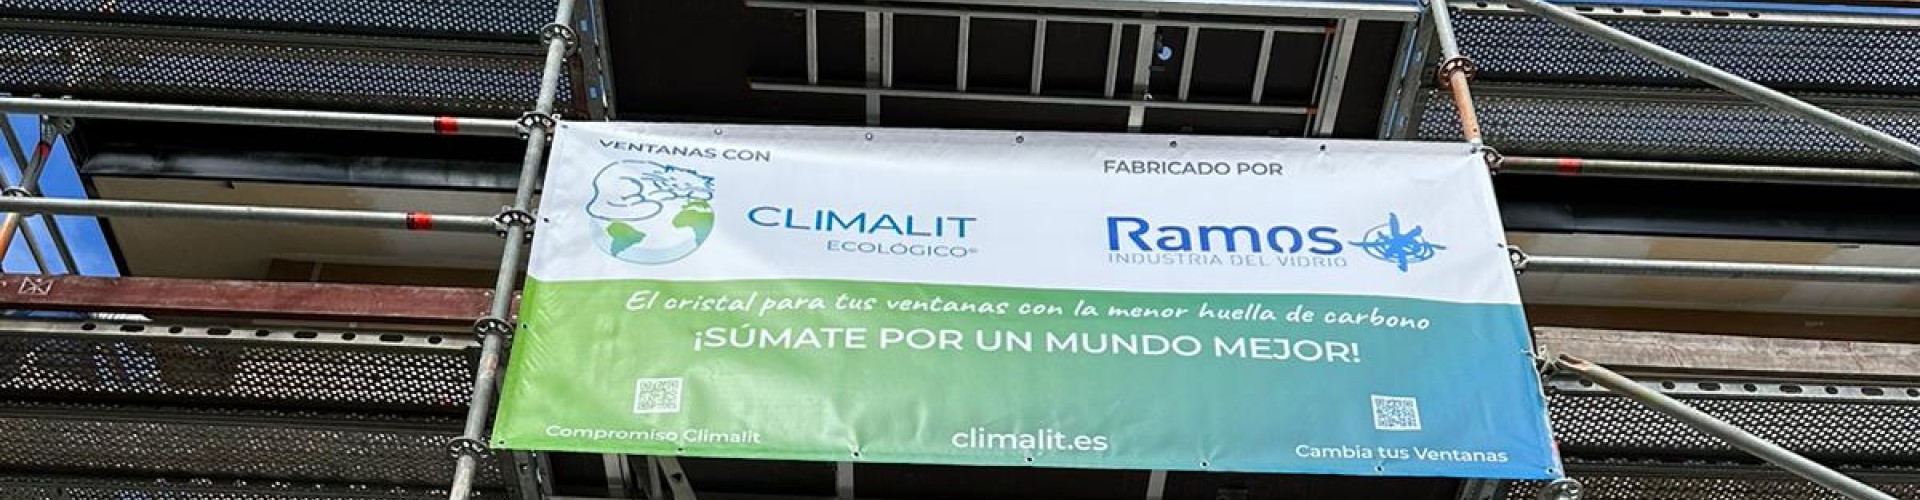 climalit-ramos-industria-vidrio-apuestan-sostenibilidad